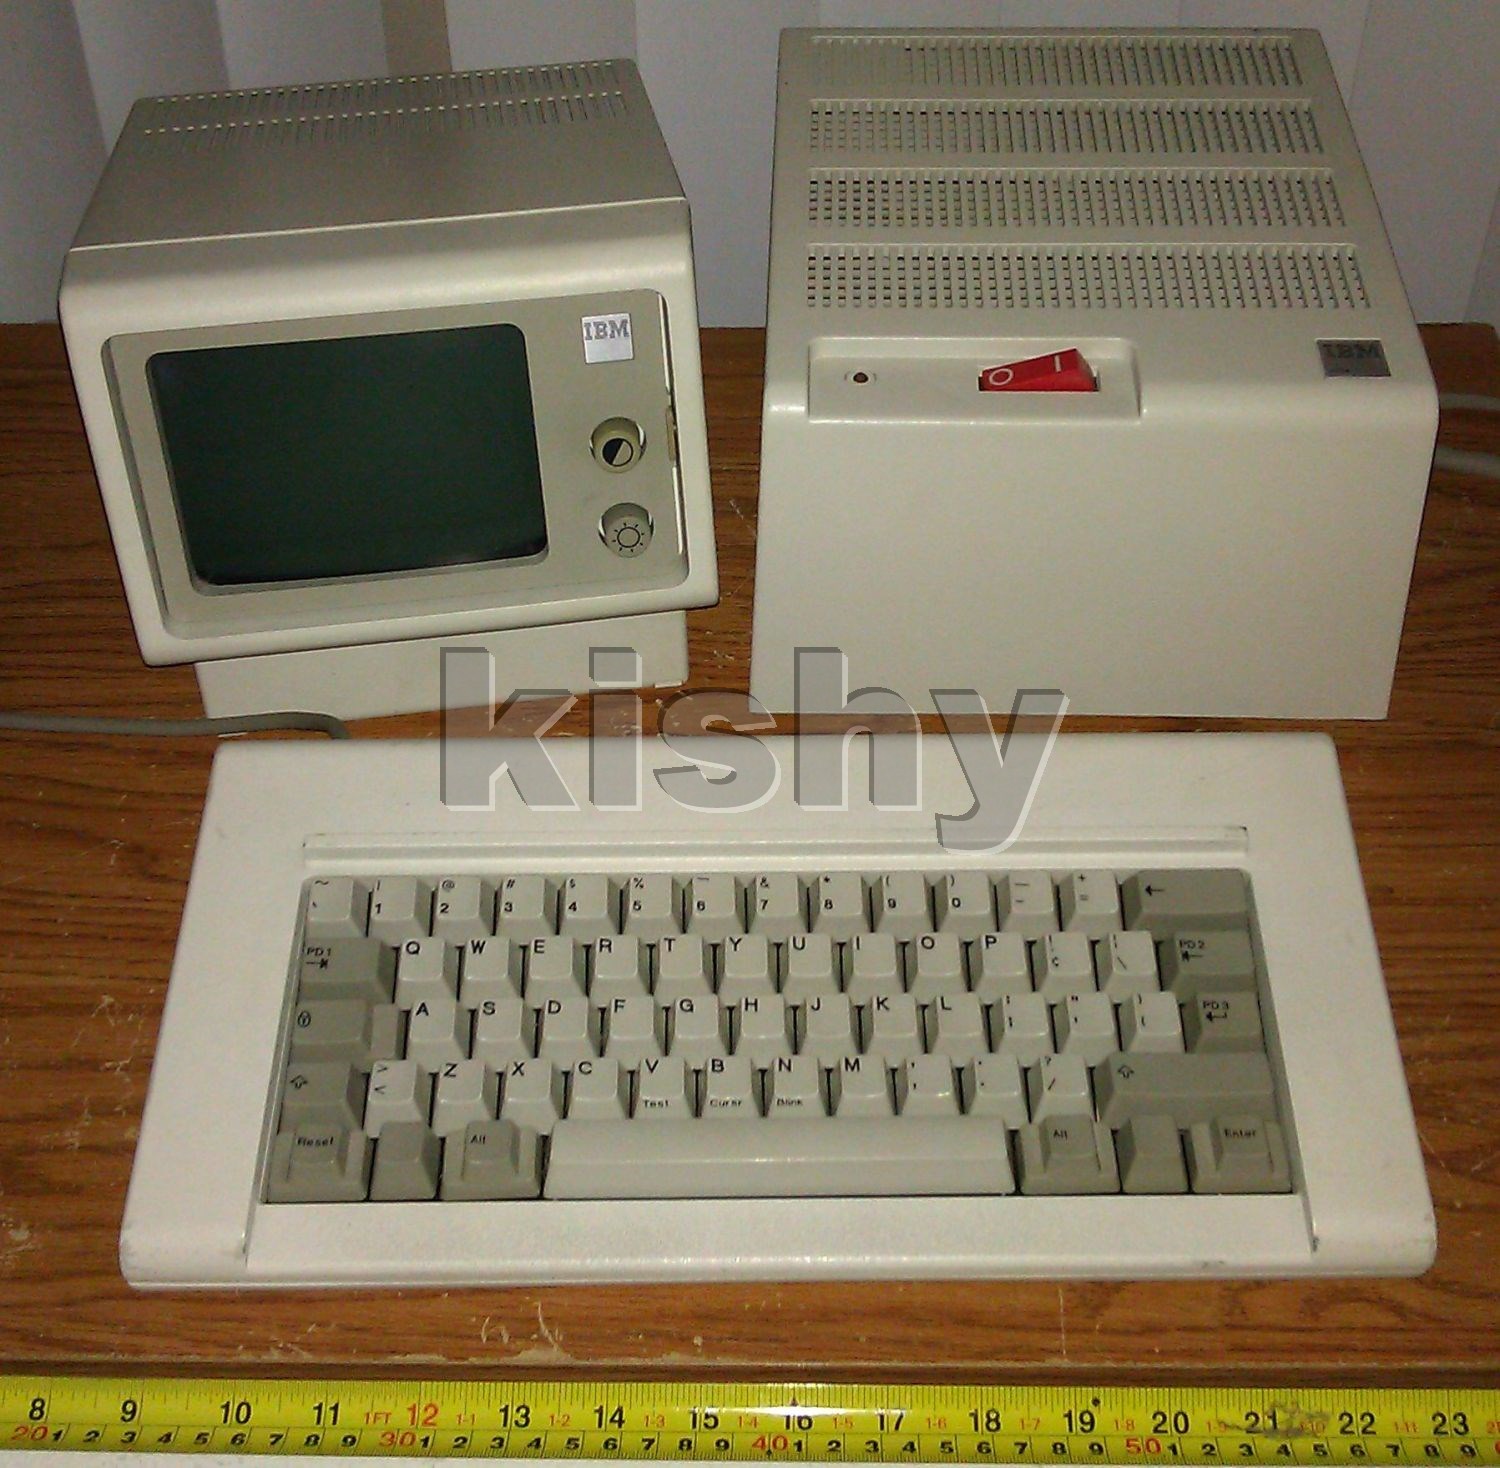 IBM 4704 with 62-key keyboard